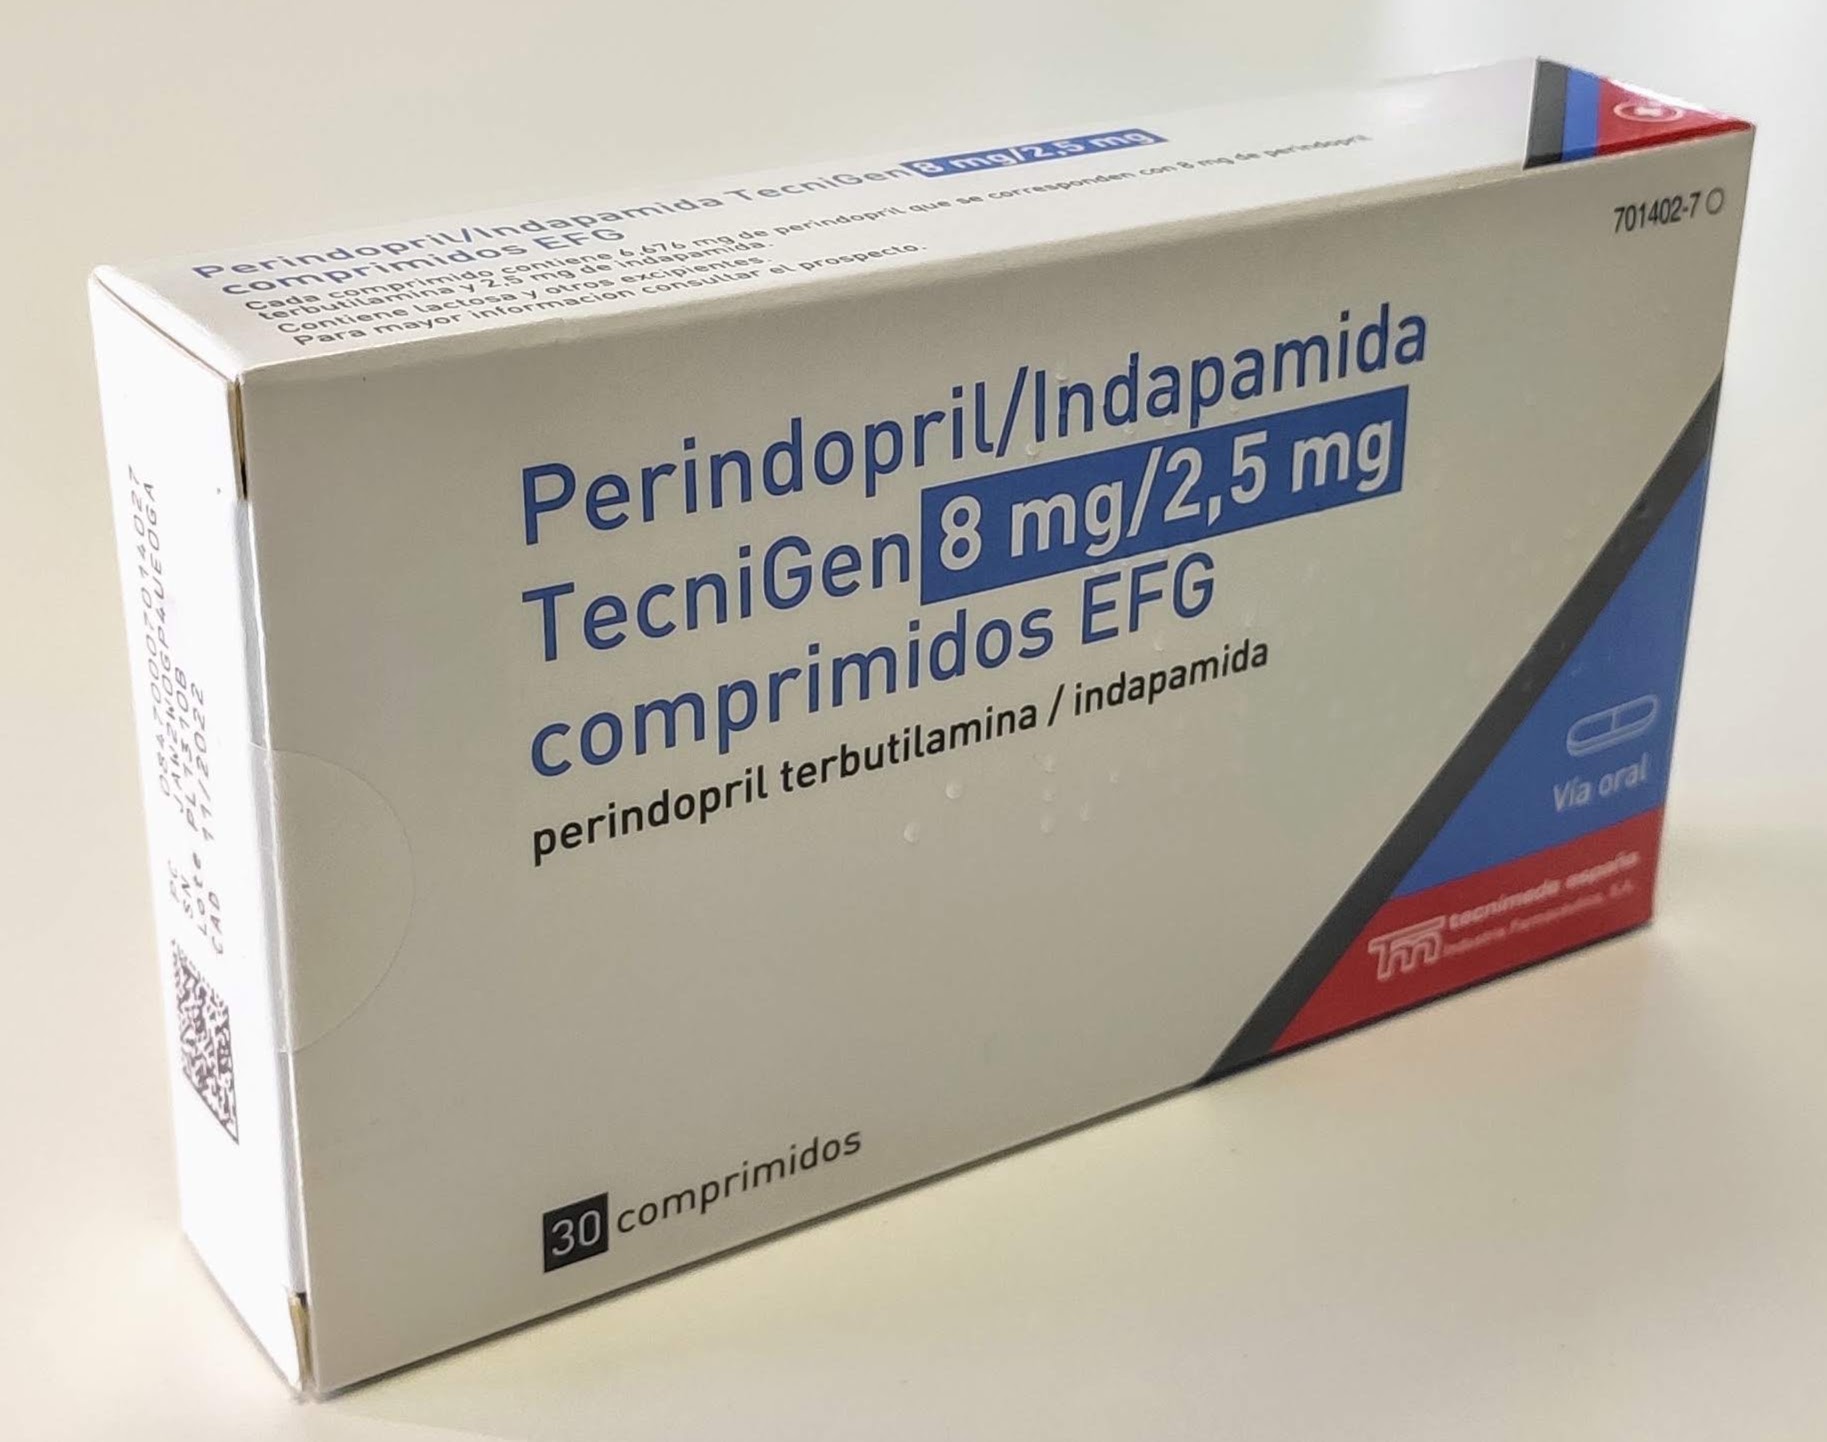 PERINDOPRIL/INDAPAMIDA TECNIGEN EFG 8 mg/2,5 mg 30 COMPRIMIDOS